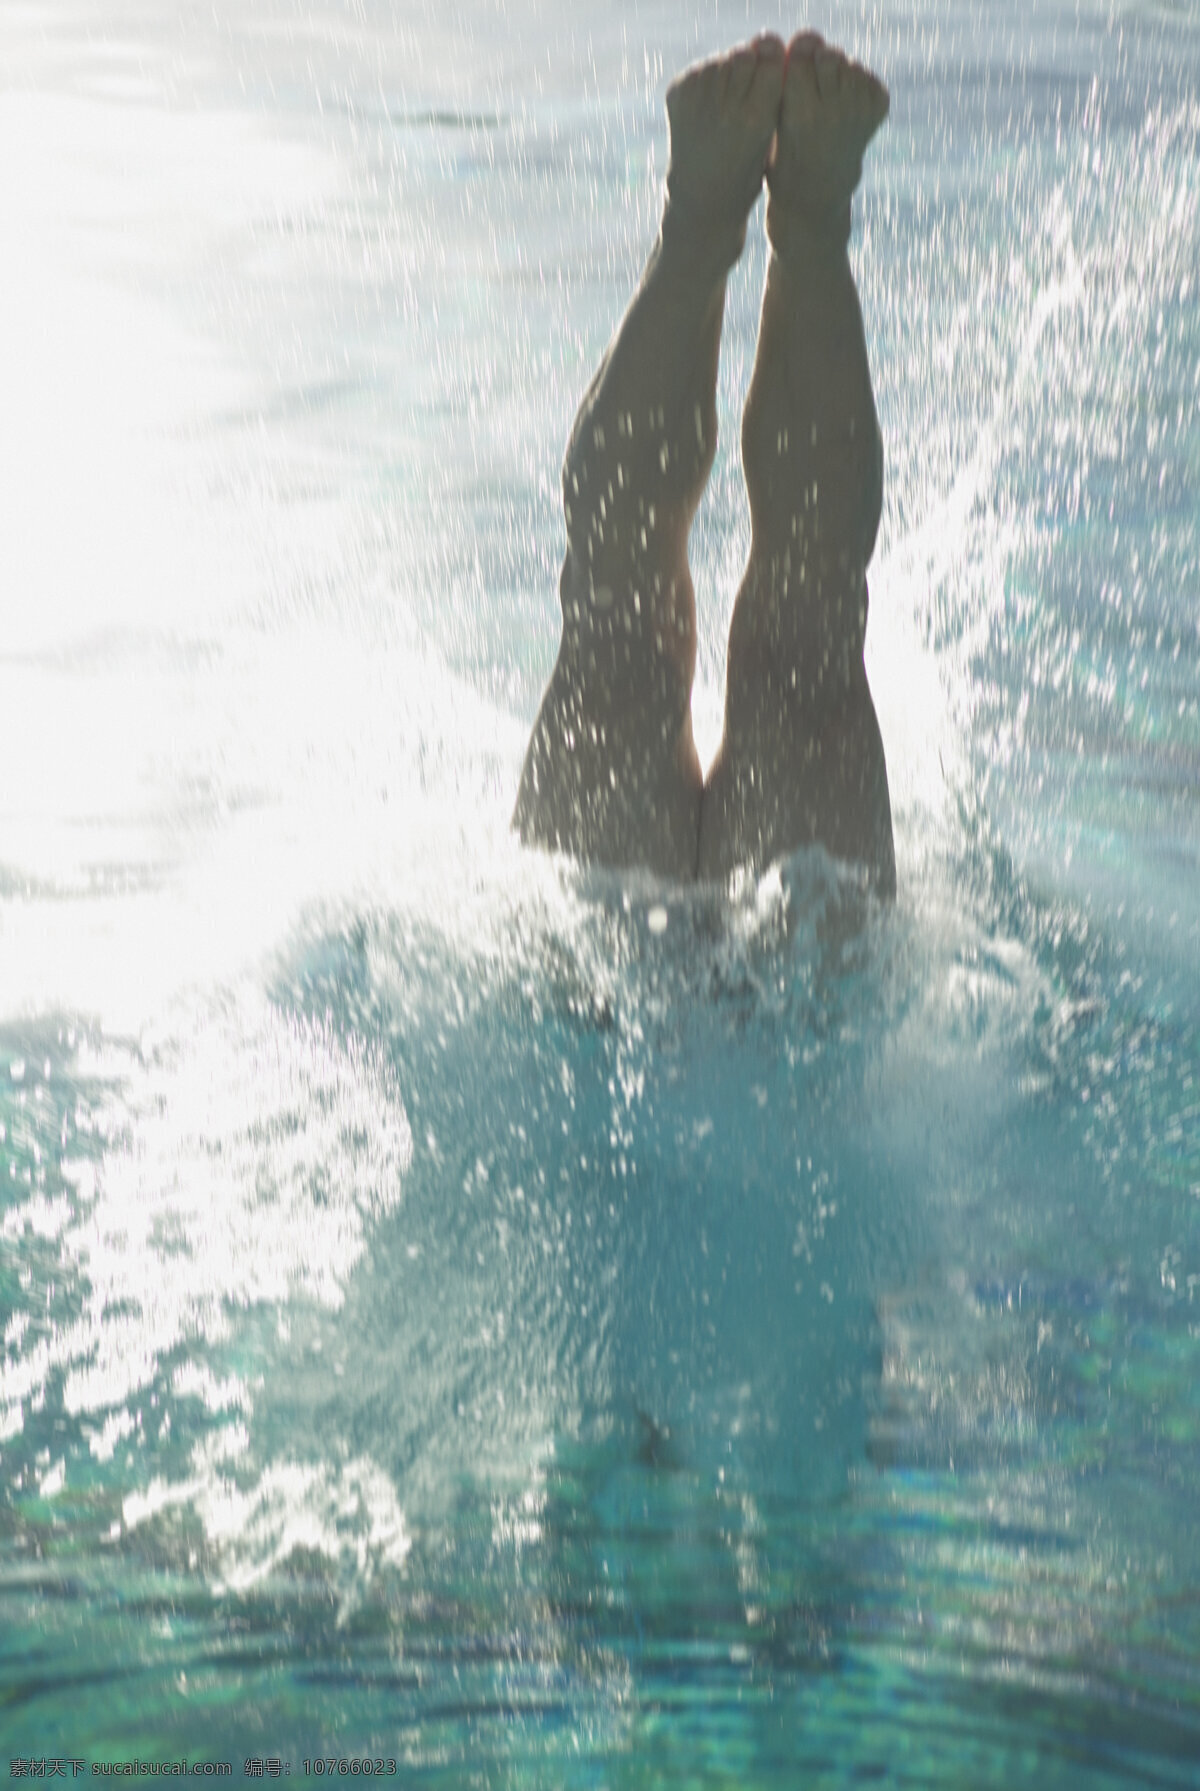 跳水运动员 体育运动 体育项目 奥运会 奥林匹克 运动员 奥运项目 跳水 比赛 水花 生活百科 白色